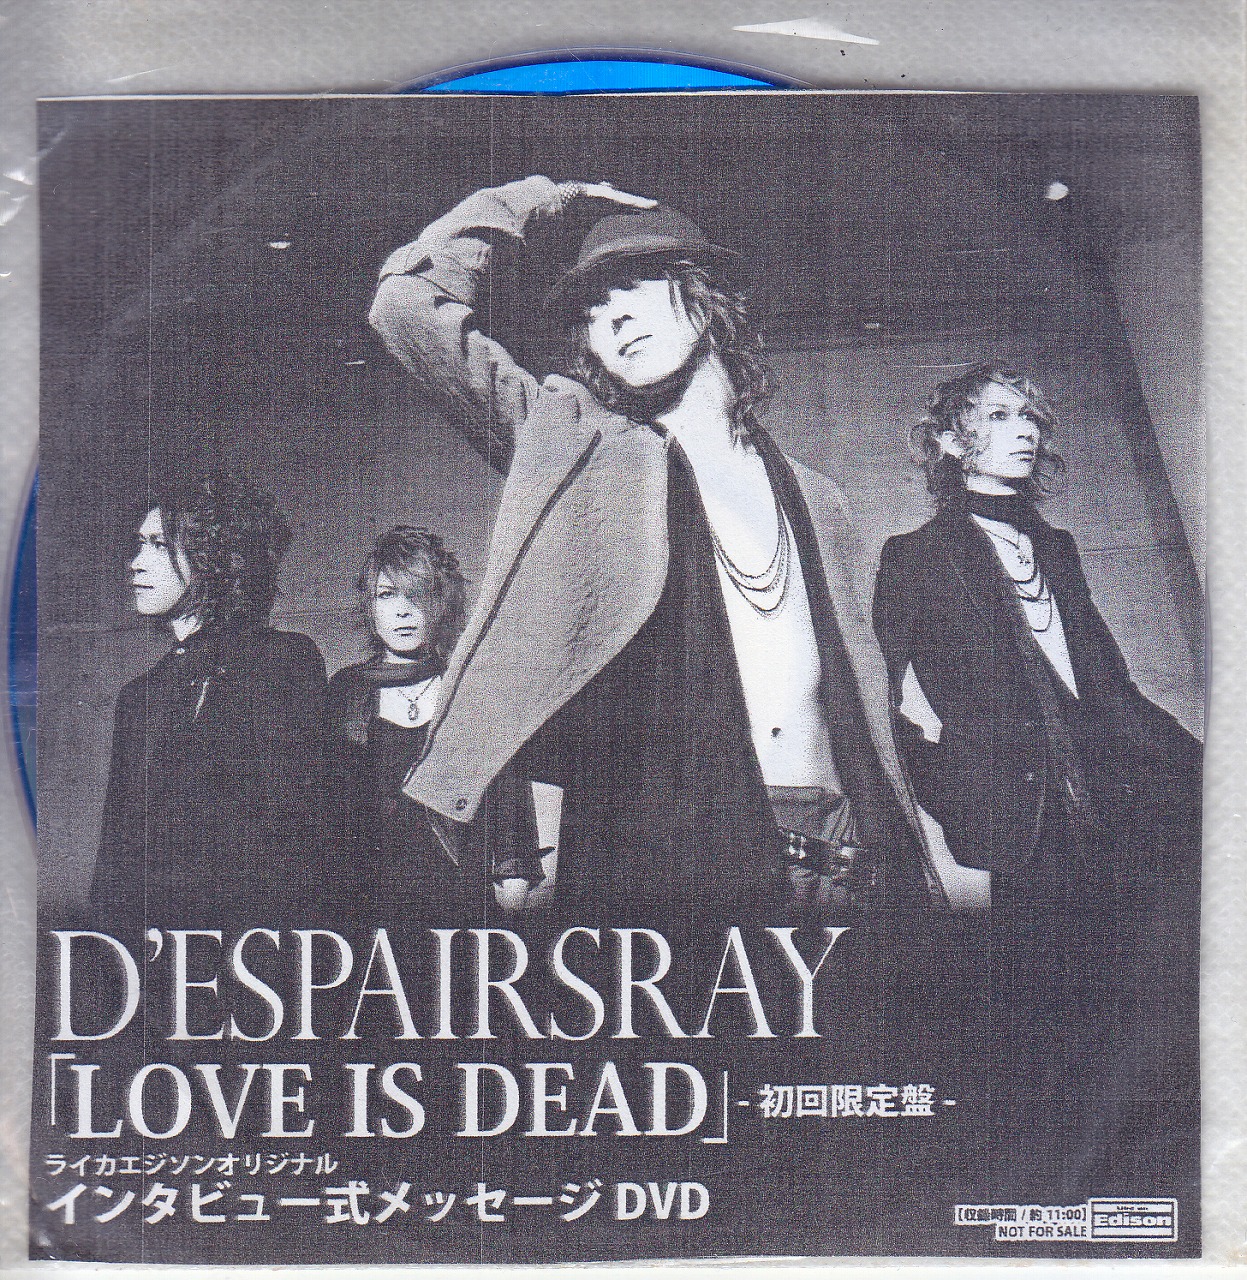 D'ESPAIRSRAY ( ディスパーズレイ )  の DVD 【LIKE AN EDISON】 LOVE IS DEAD 初回限定盤 ライカエジソンオリジナル インタビュー式メッセージDVD